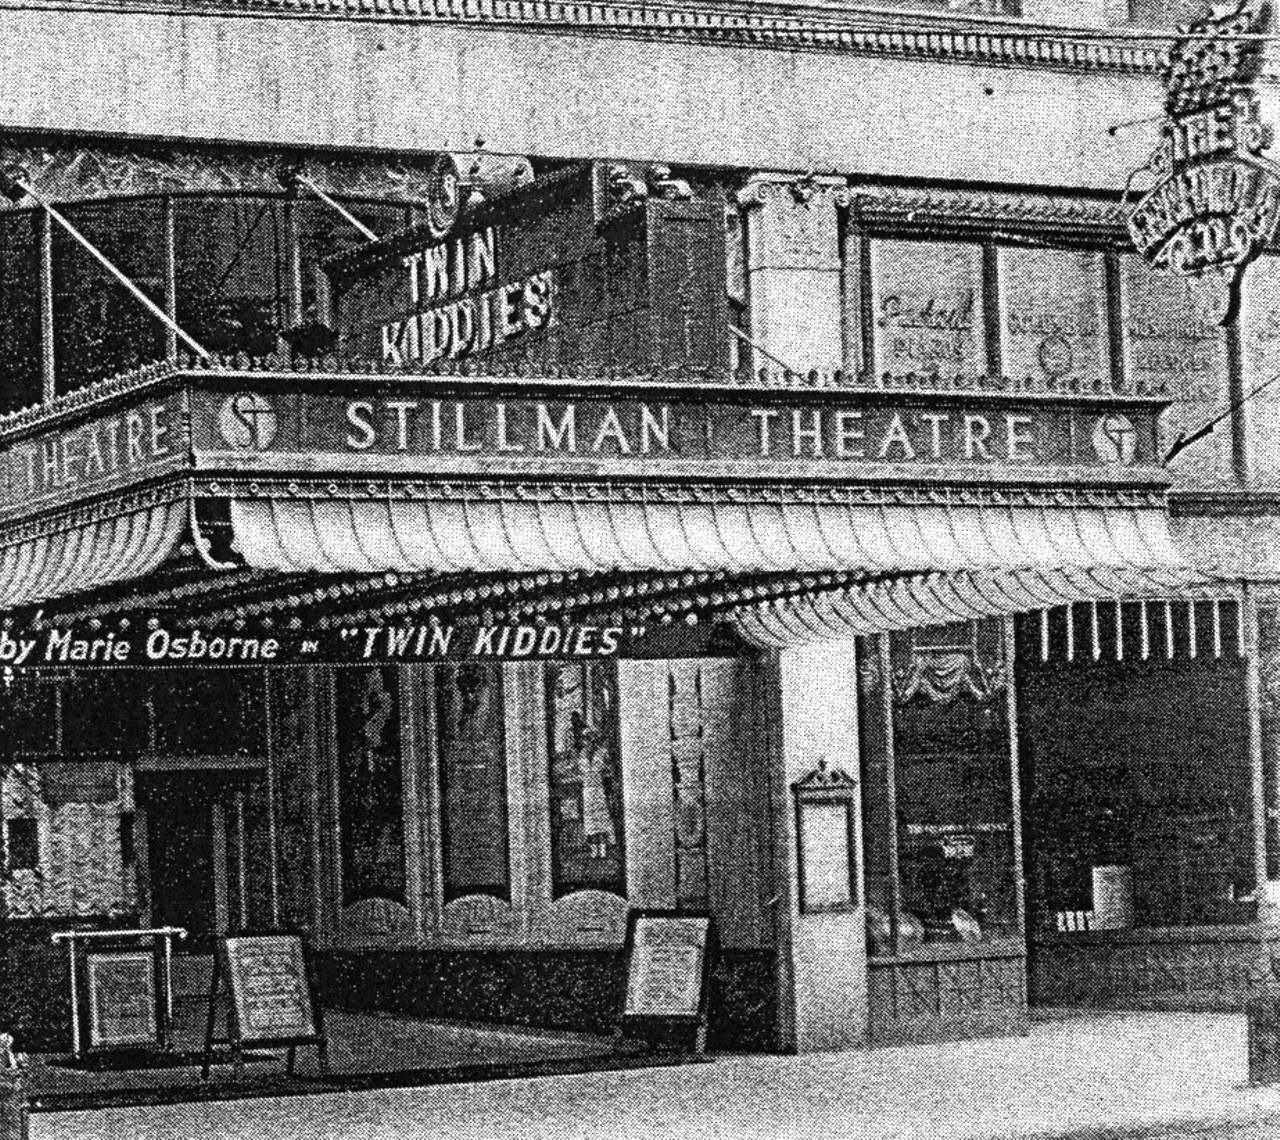 The Stillman Theatre